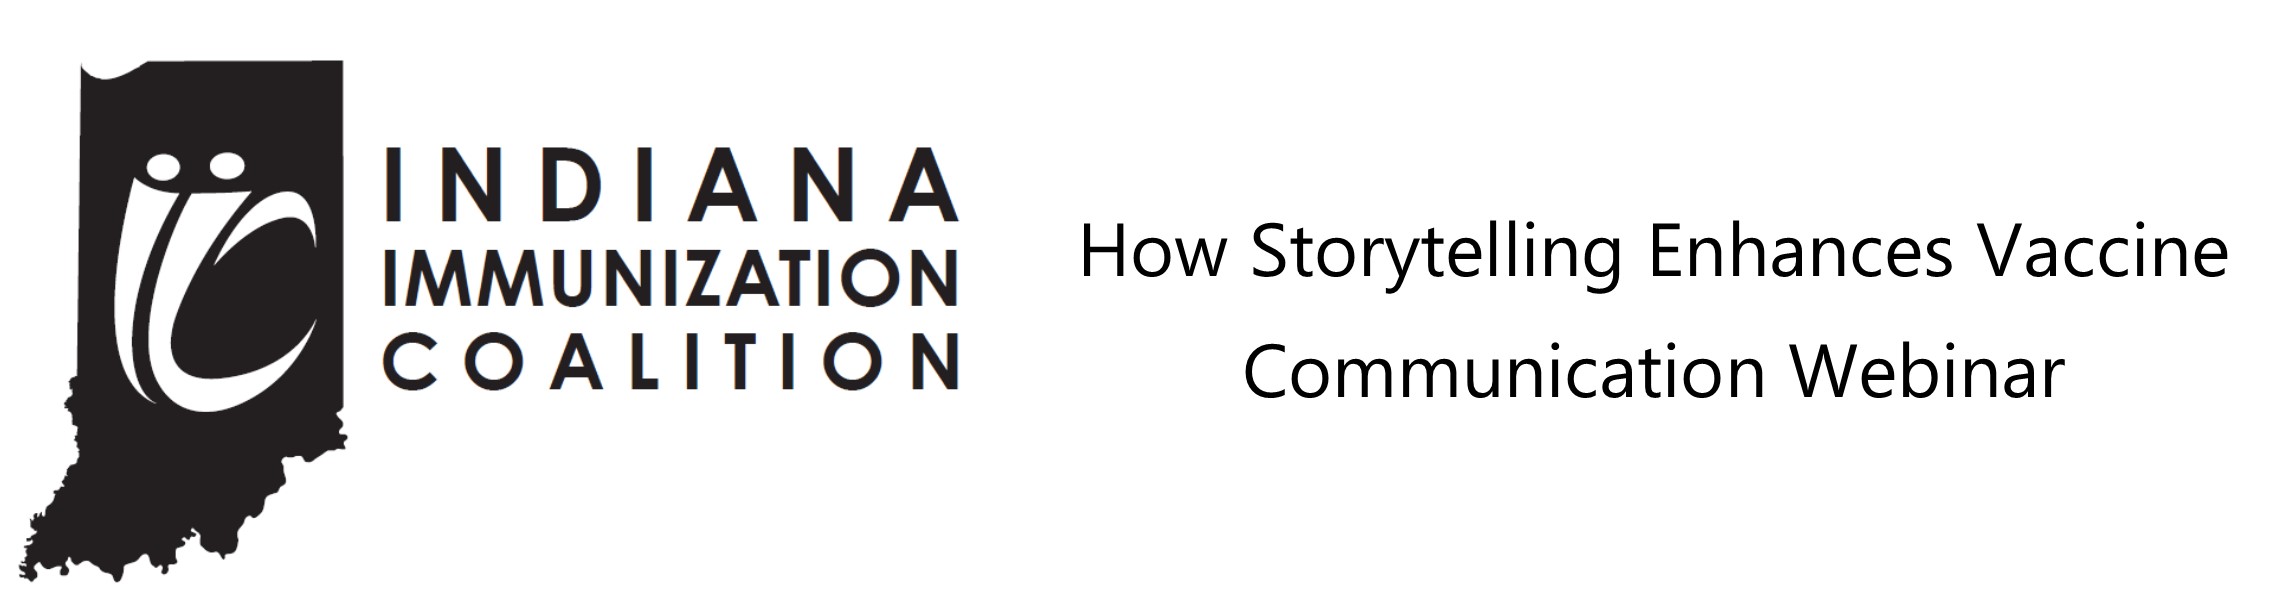 How Storytelling Enhances Vaccine Communication Webinar Banner